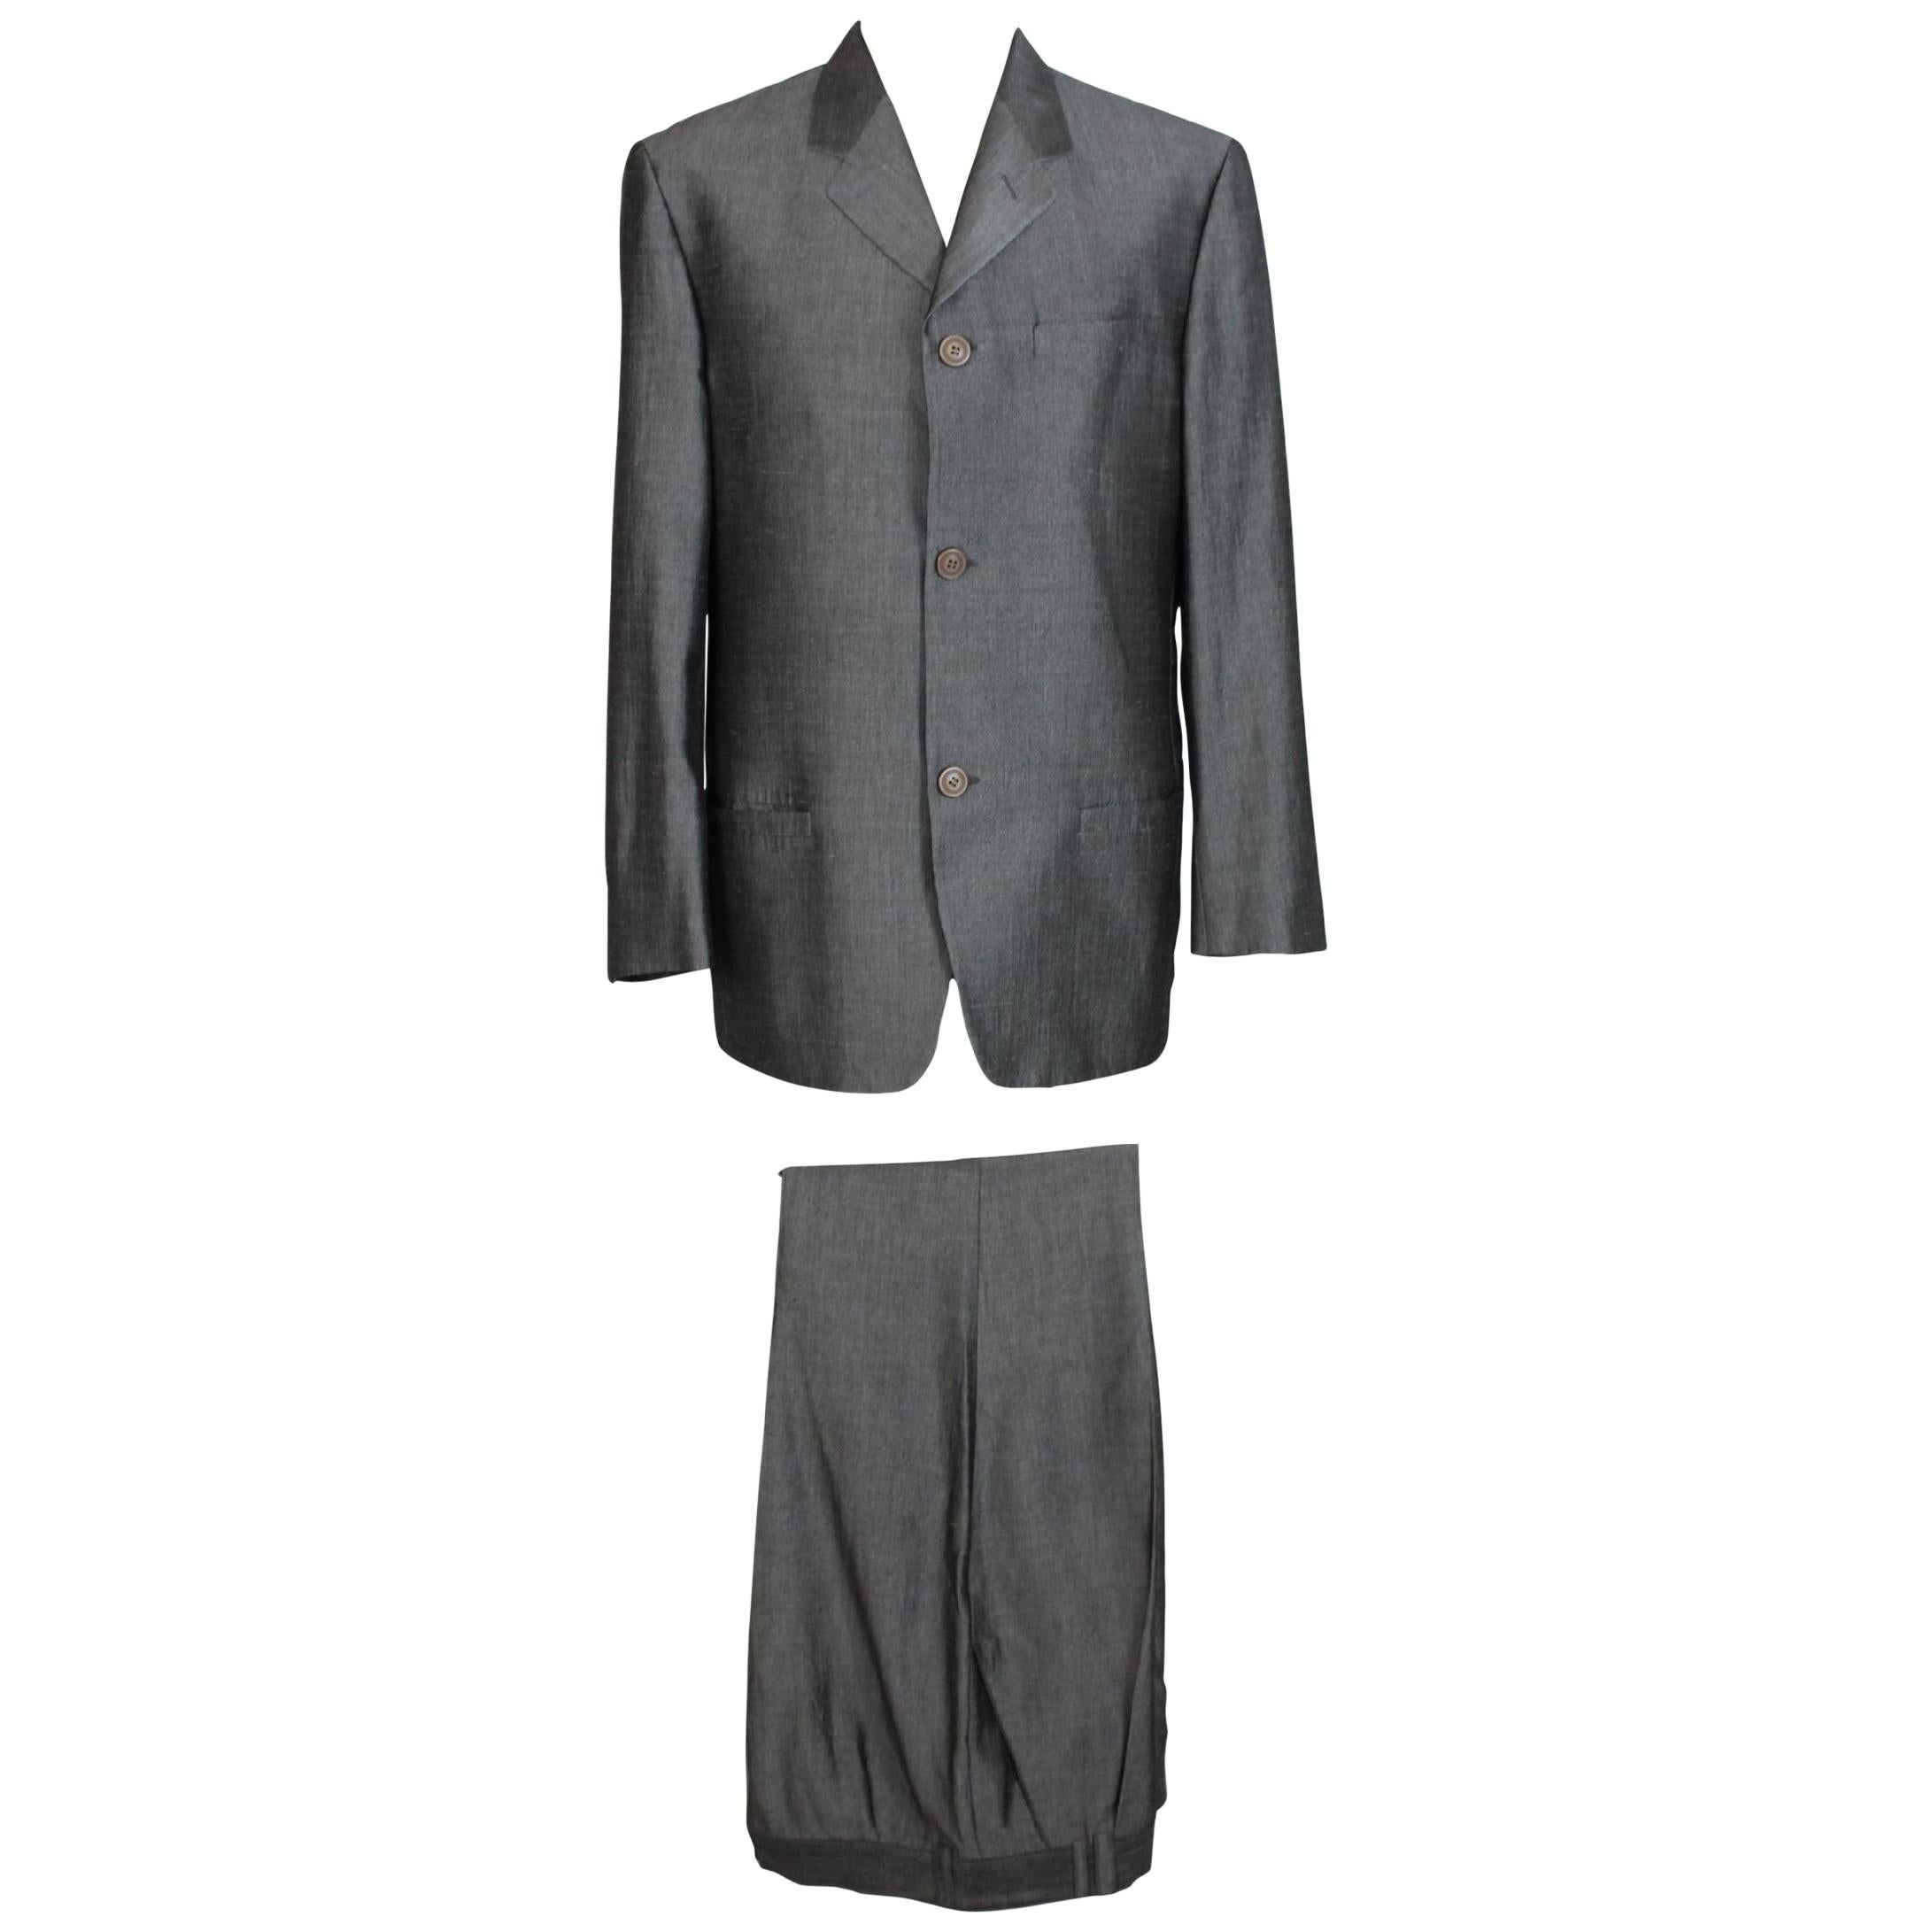 Gianni Versace Vintage Suit Gray Linen Complete Vest, 1990s